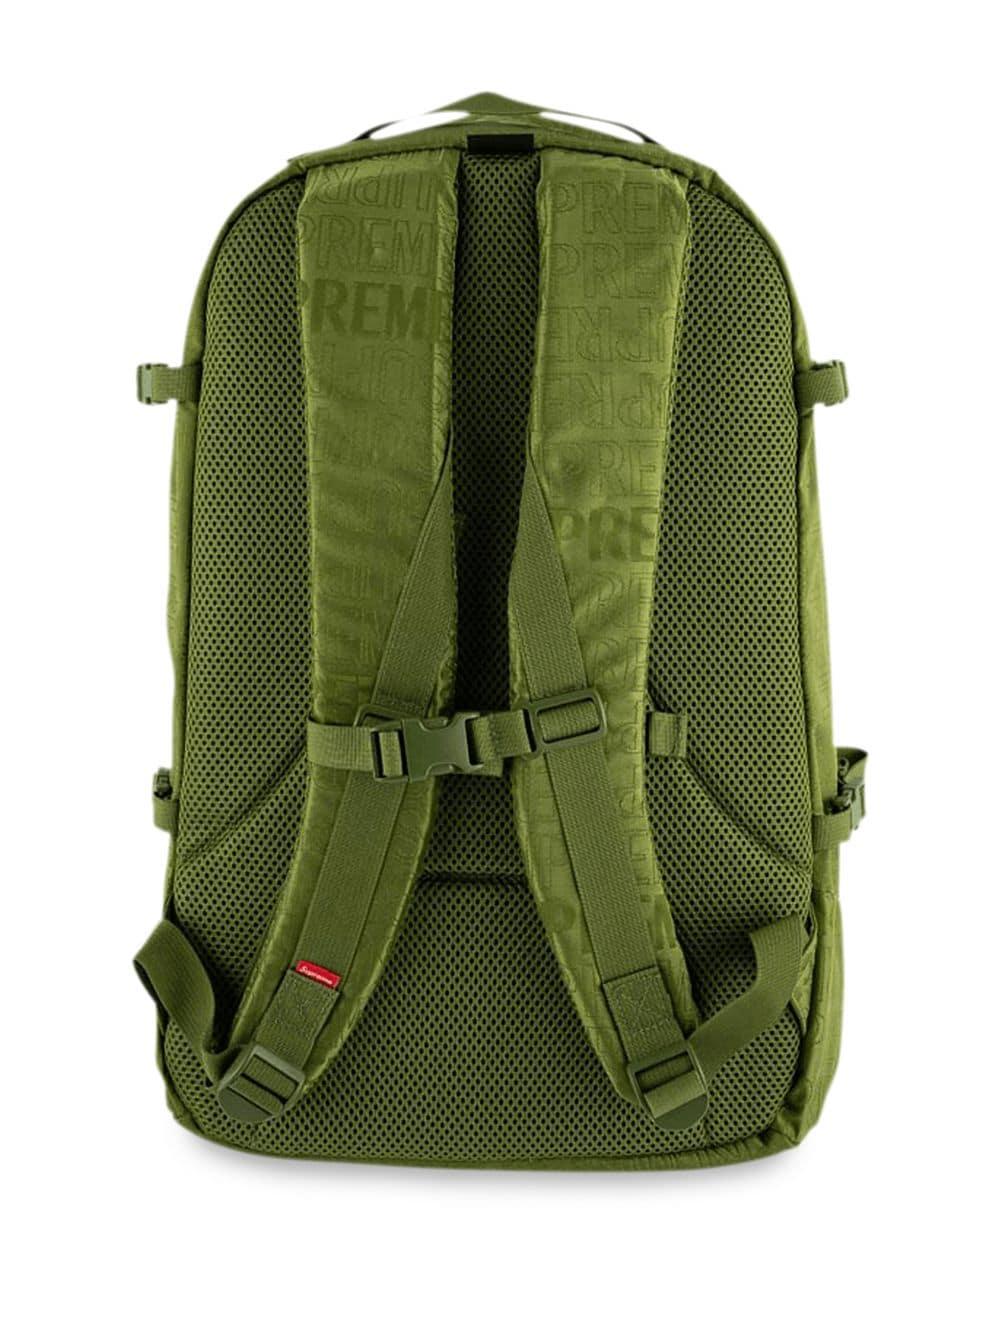 Supreme Logo Backpack in Olive (Green) for Men - Lyst